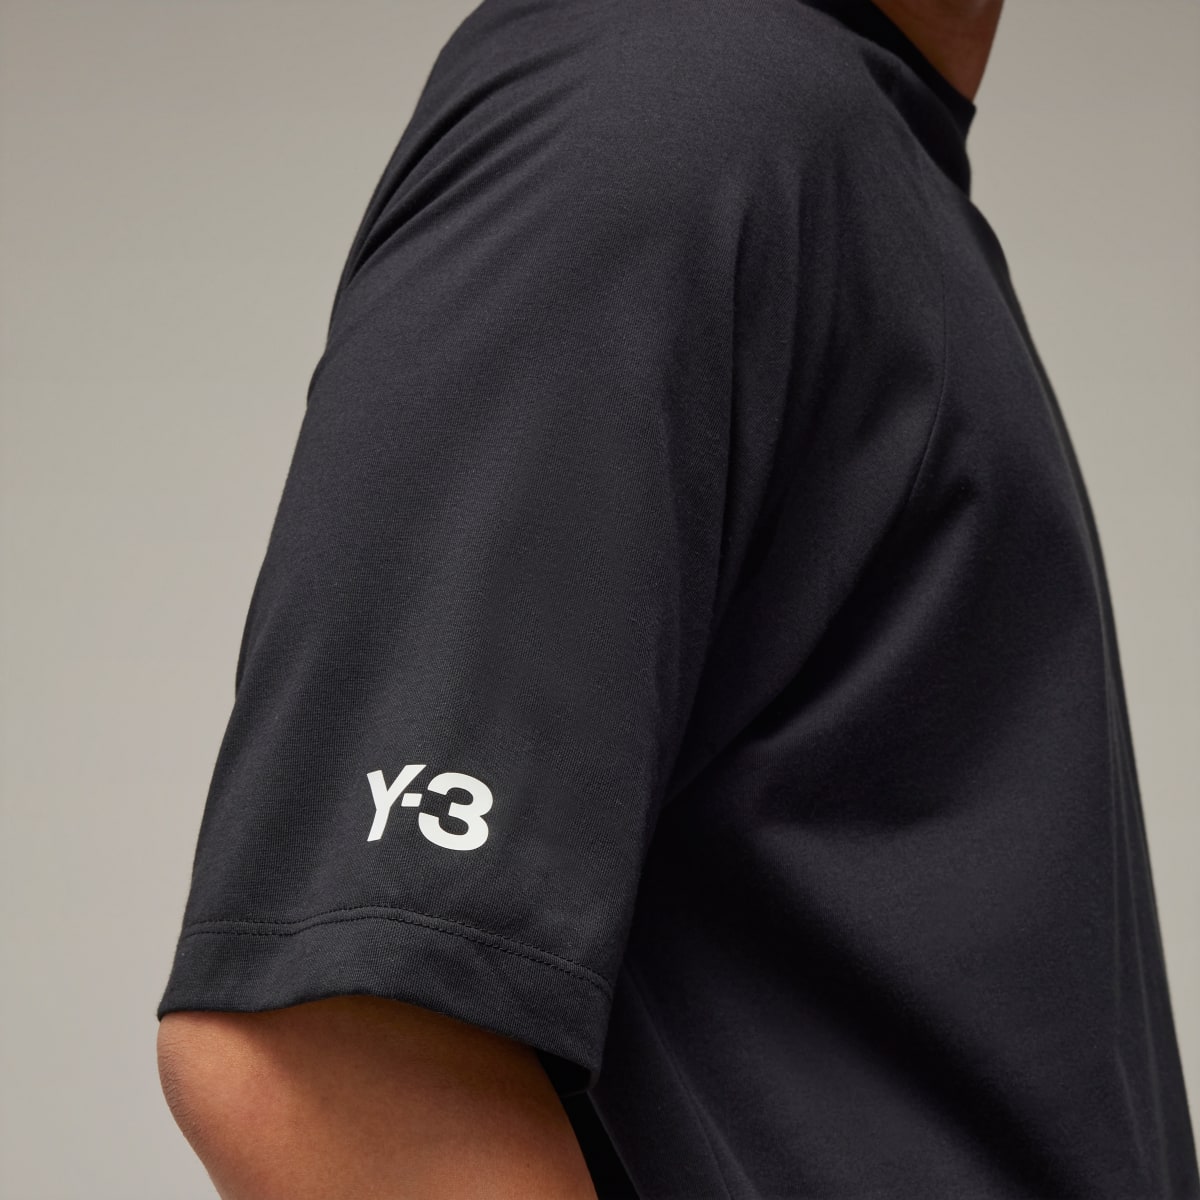 Adidas Y-3 3-Stripes Short Sleeve T-Shirt. 6